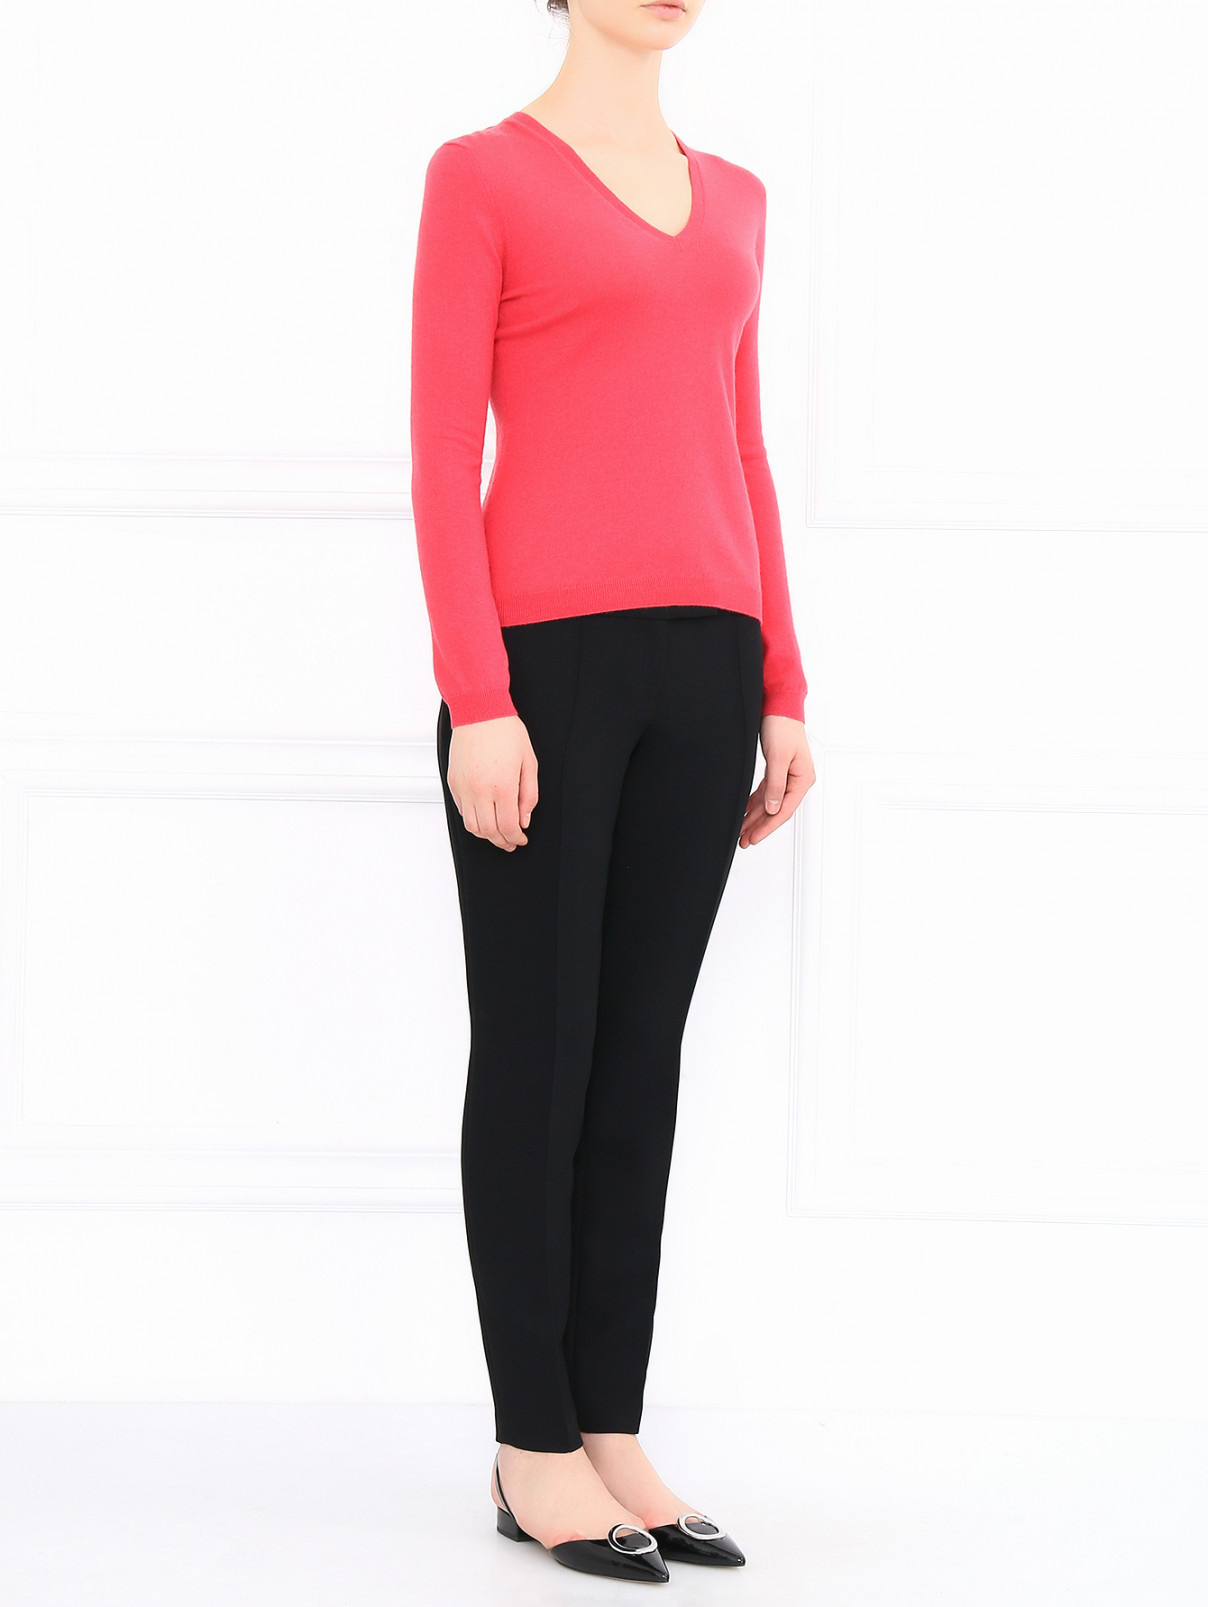 Укороченные брюки со стрелками Barbara Bui  –  Модель Общий вид  – Цвет:  Черный